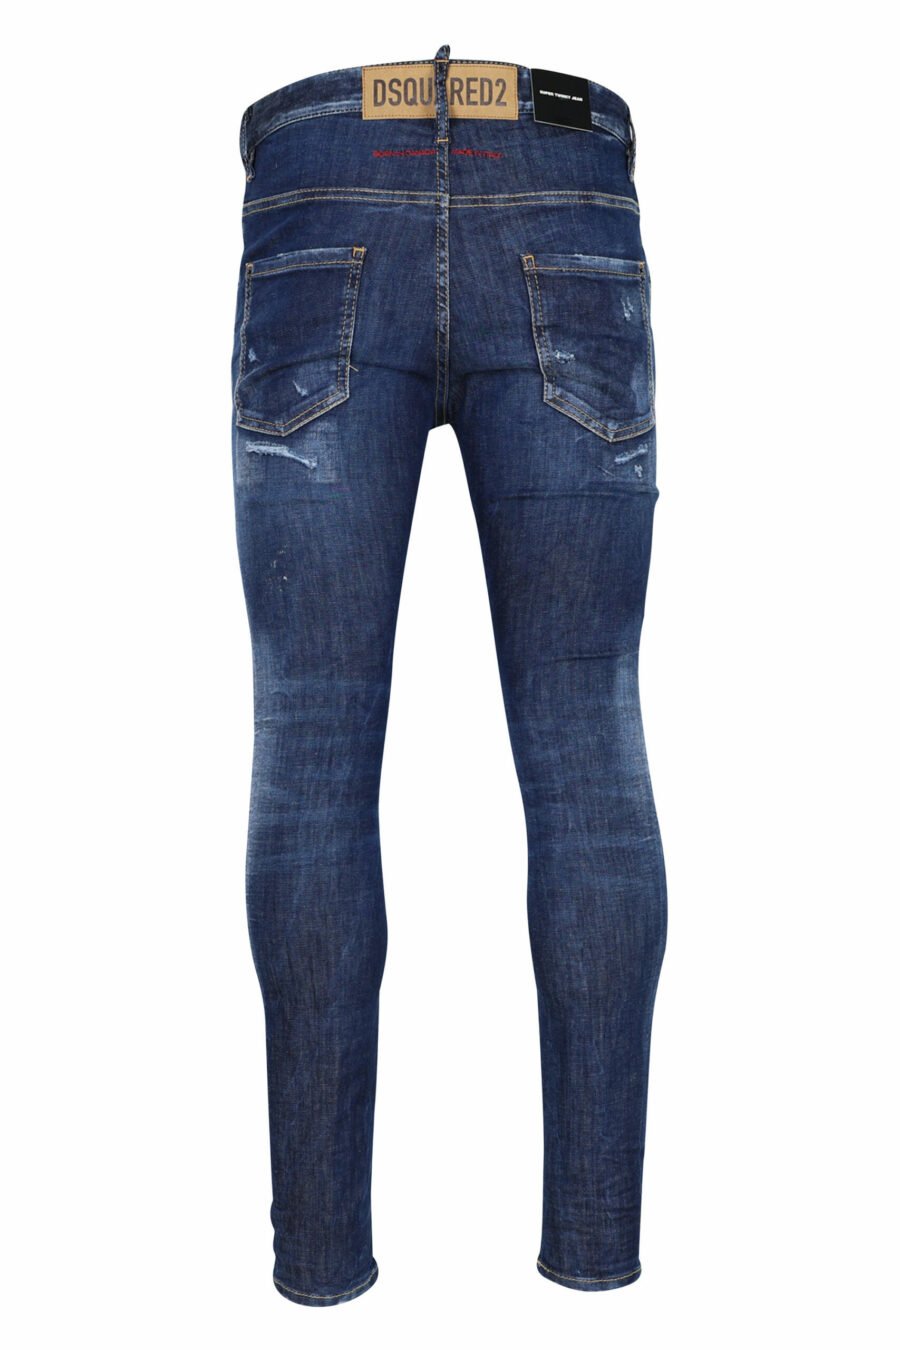 Blaue "super twinky jean" Jeans mit Rissen und ausgefranst - 8054148106201 2 skaliert